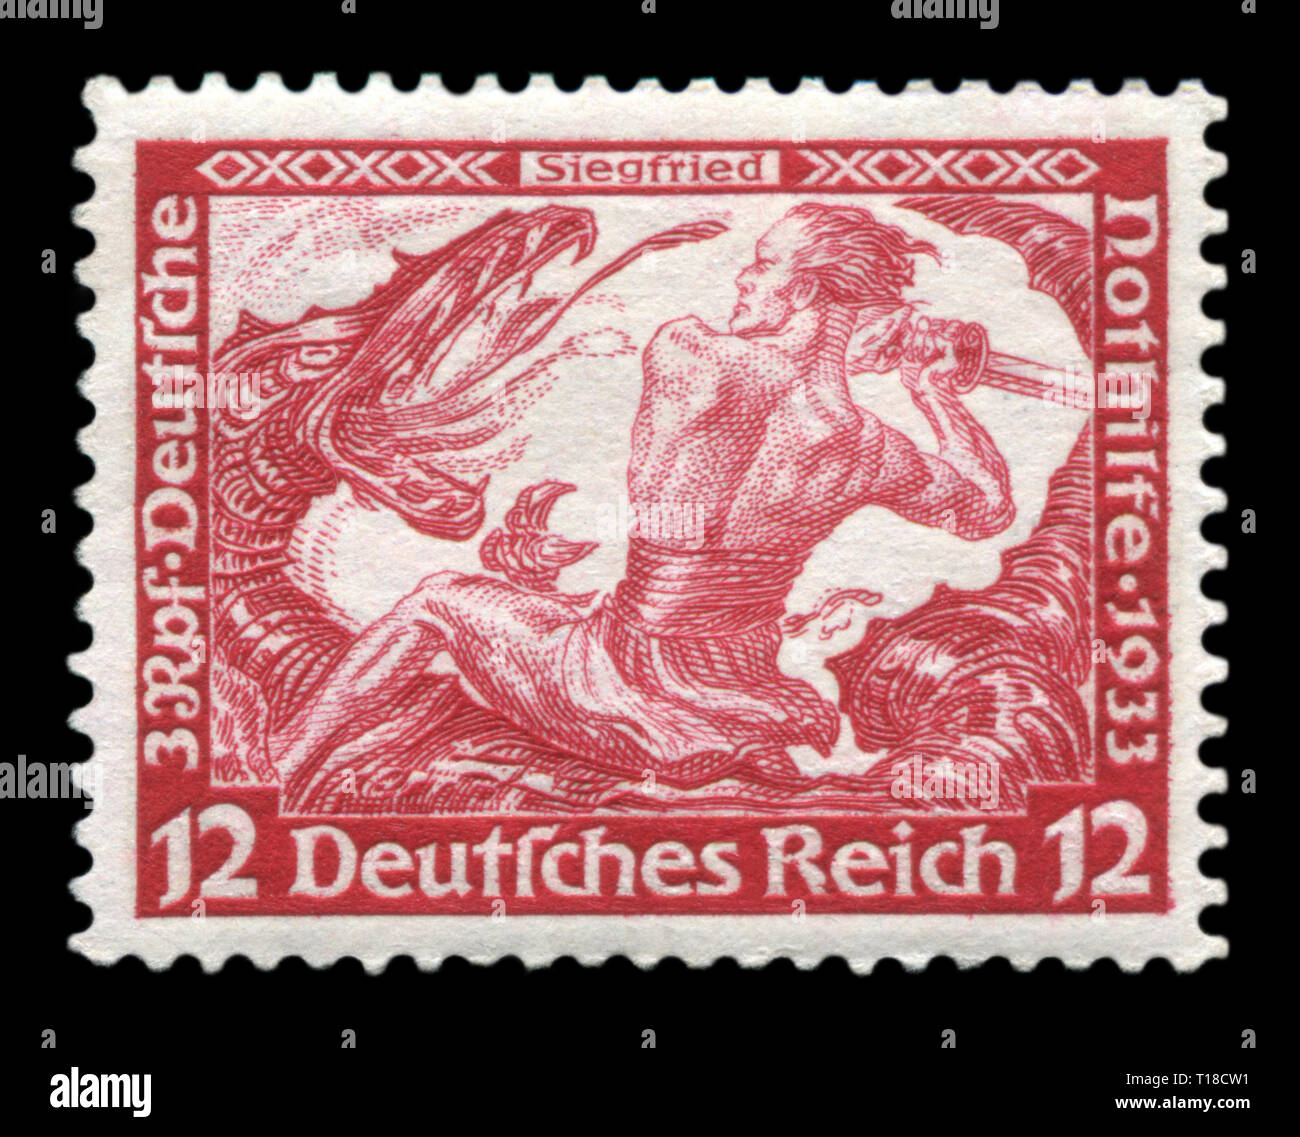 Historique allemand stamp : Siegfried terrassant le dragon, de Richard Wagner, le "fonds d'aide d'urgence", 1933, l'Allemagne, le troisième Reich Banque D'Images